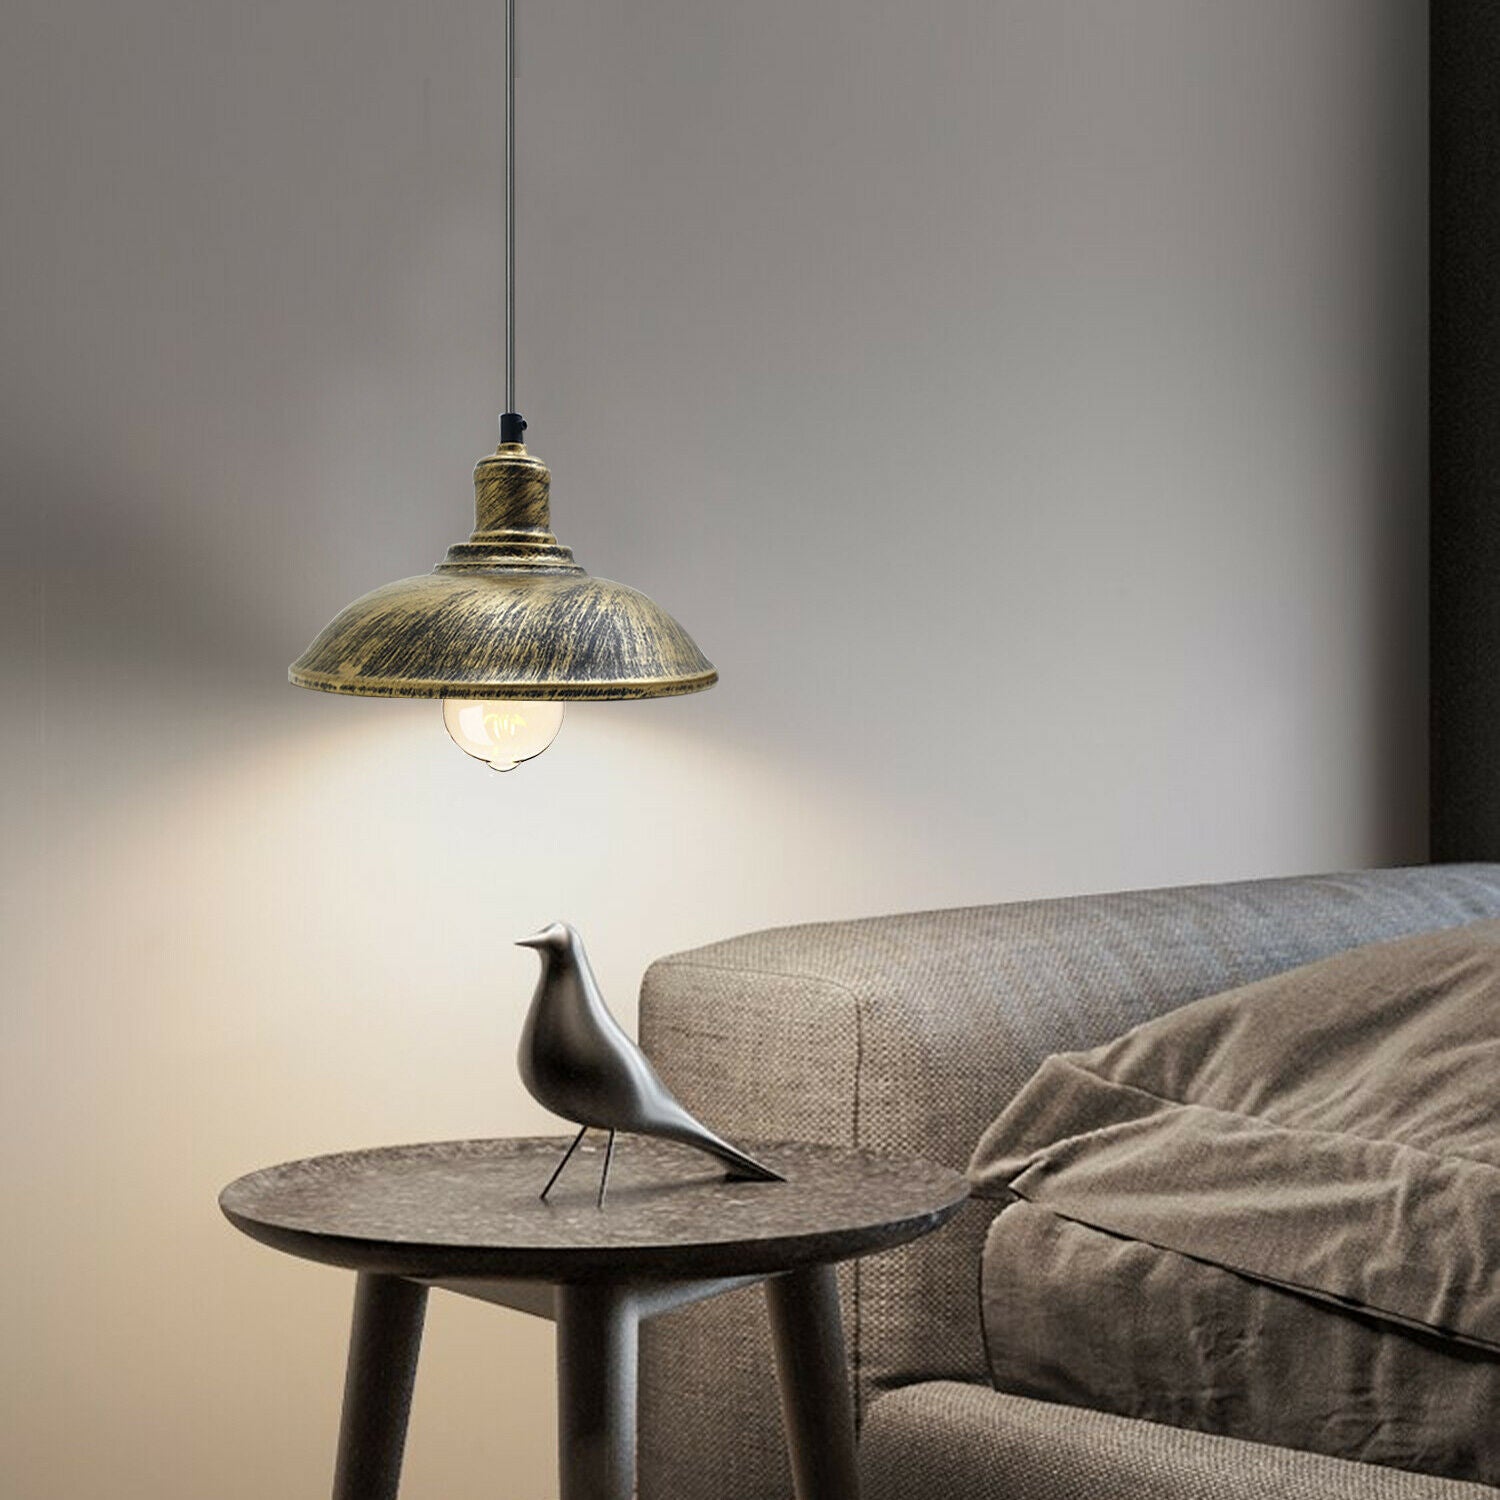 Brushed Brass Modern Vintage Industrial Ceiling Pendant Lamp Shade~1887 - LEDSone UK Ltd